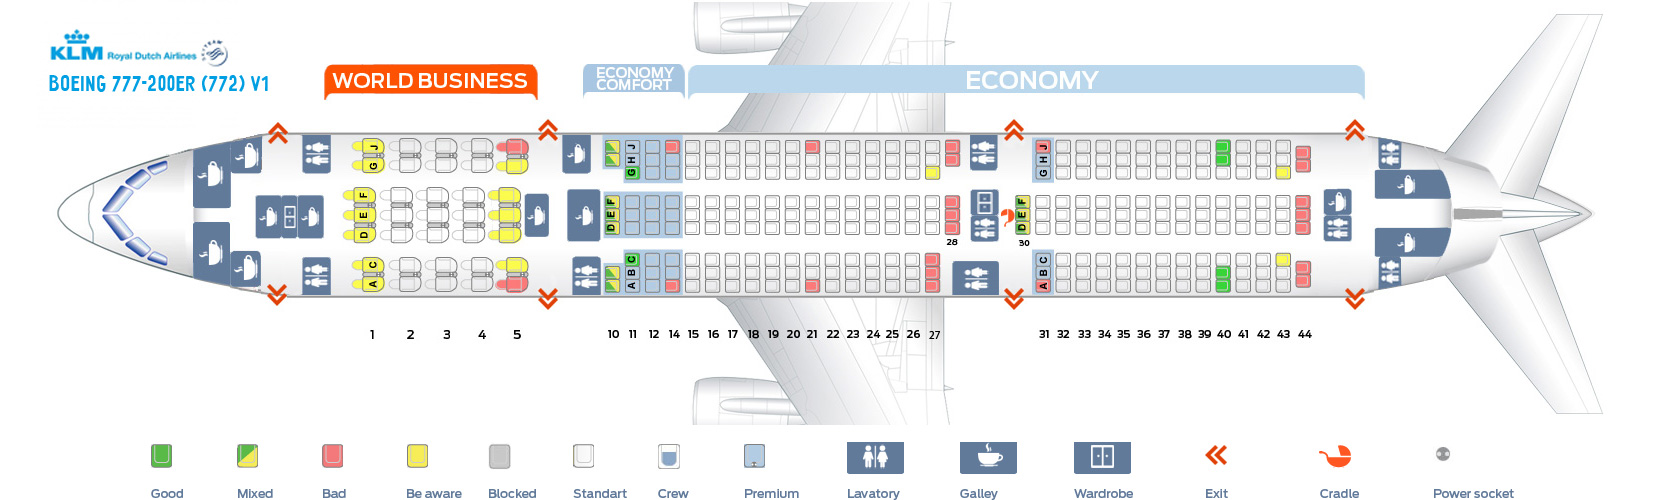 Seat Map Boeing 777-200ER V1 KLM Airlines